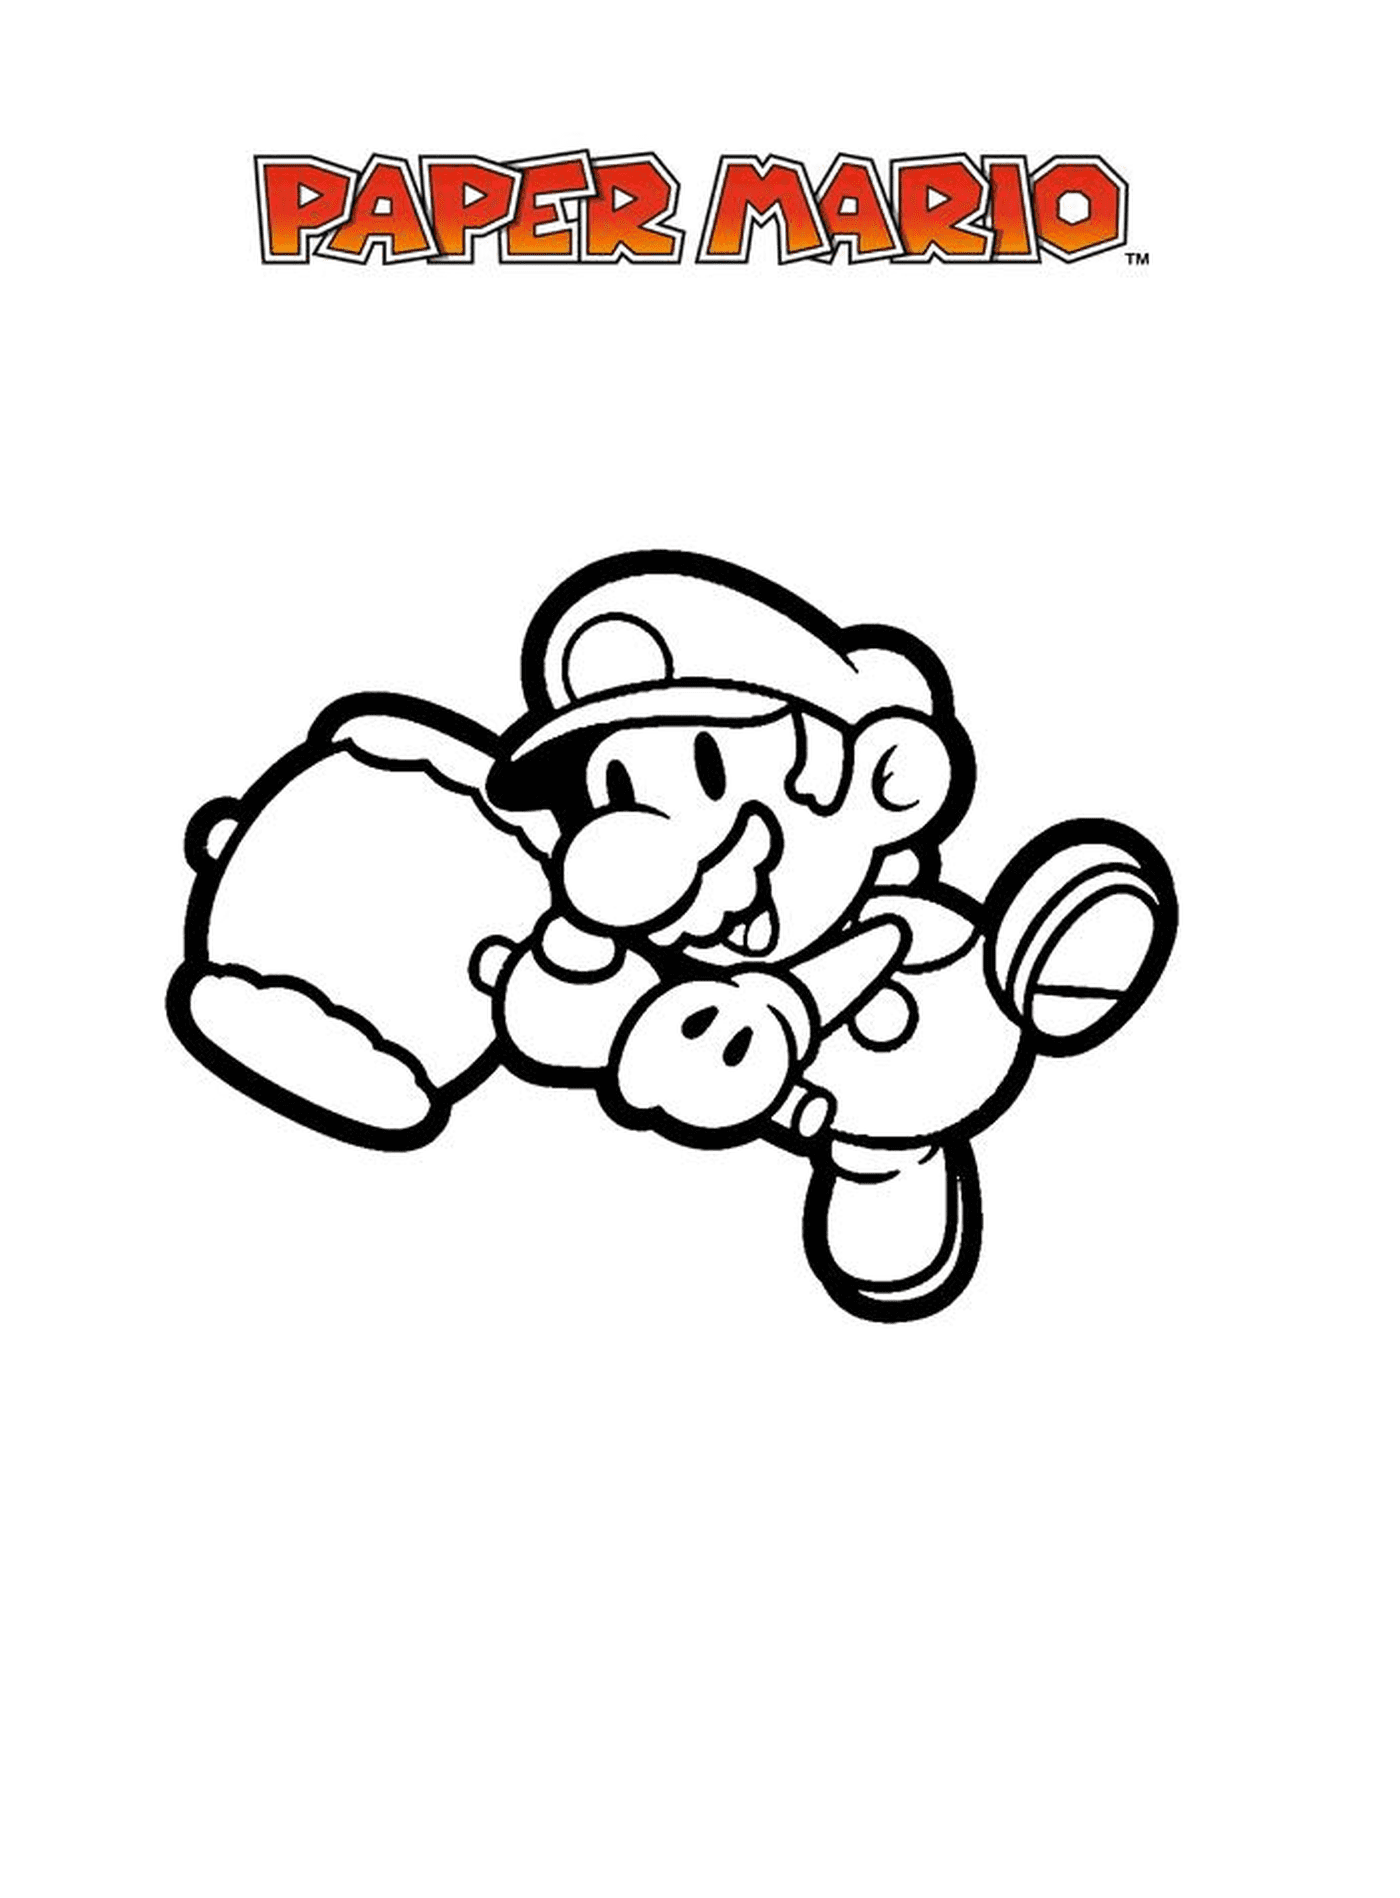  Mario ha un guanto 